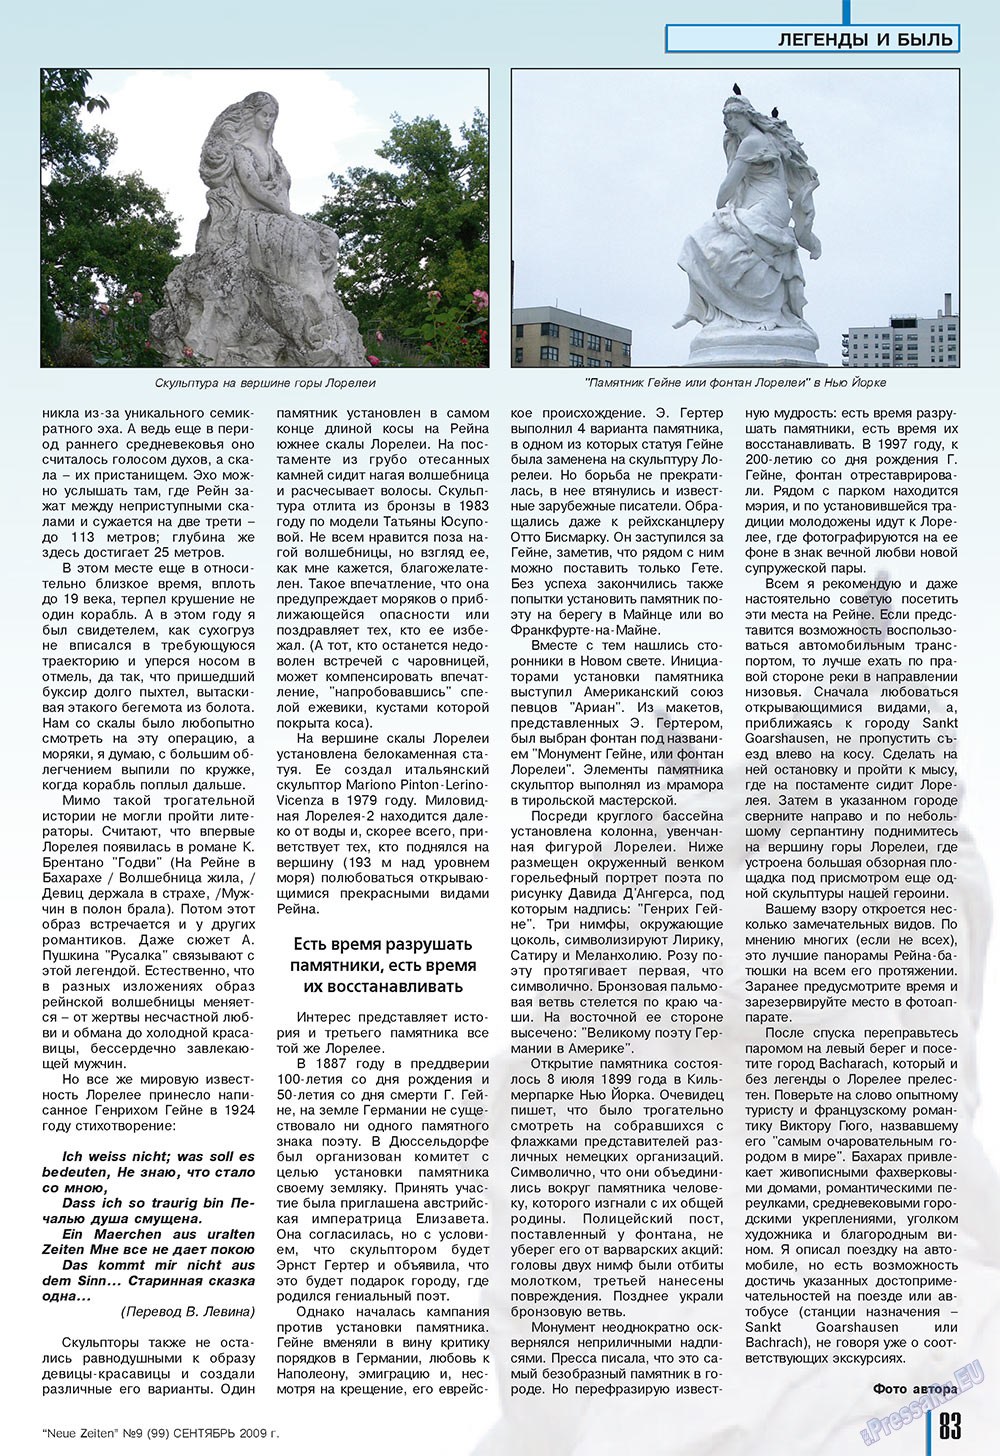 Neue Zeiten, журнал. 2009 №9 стр.83